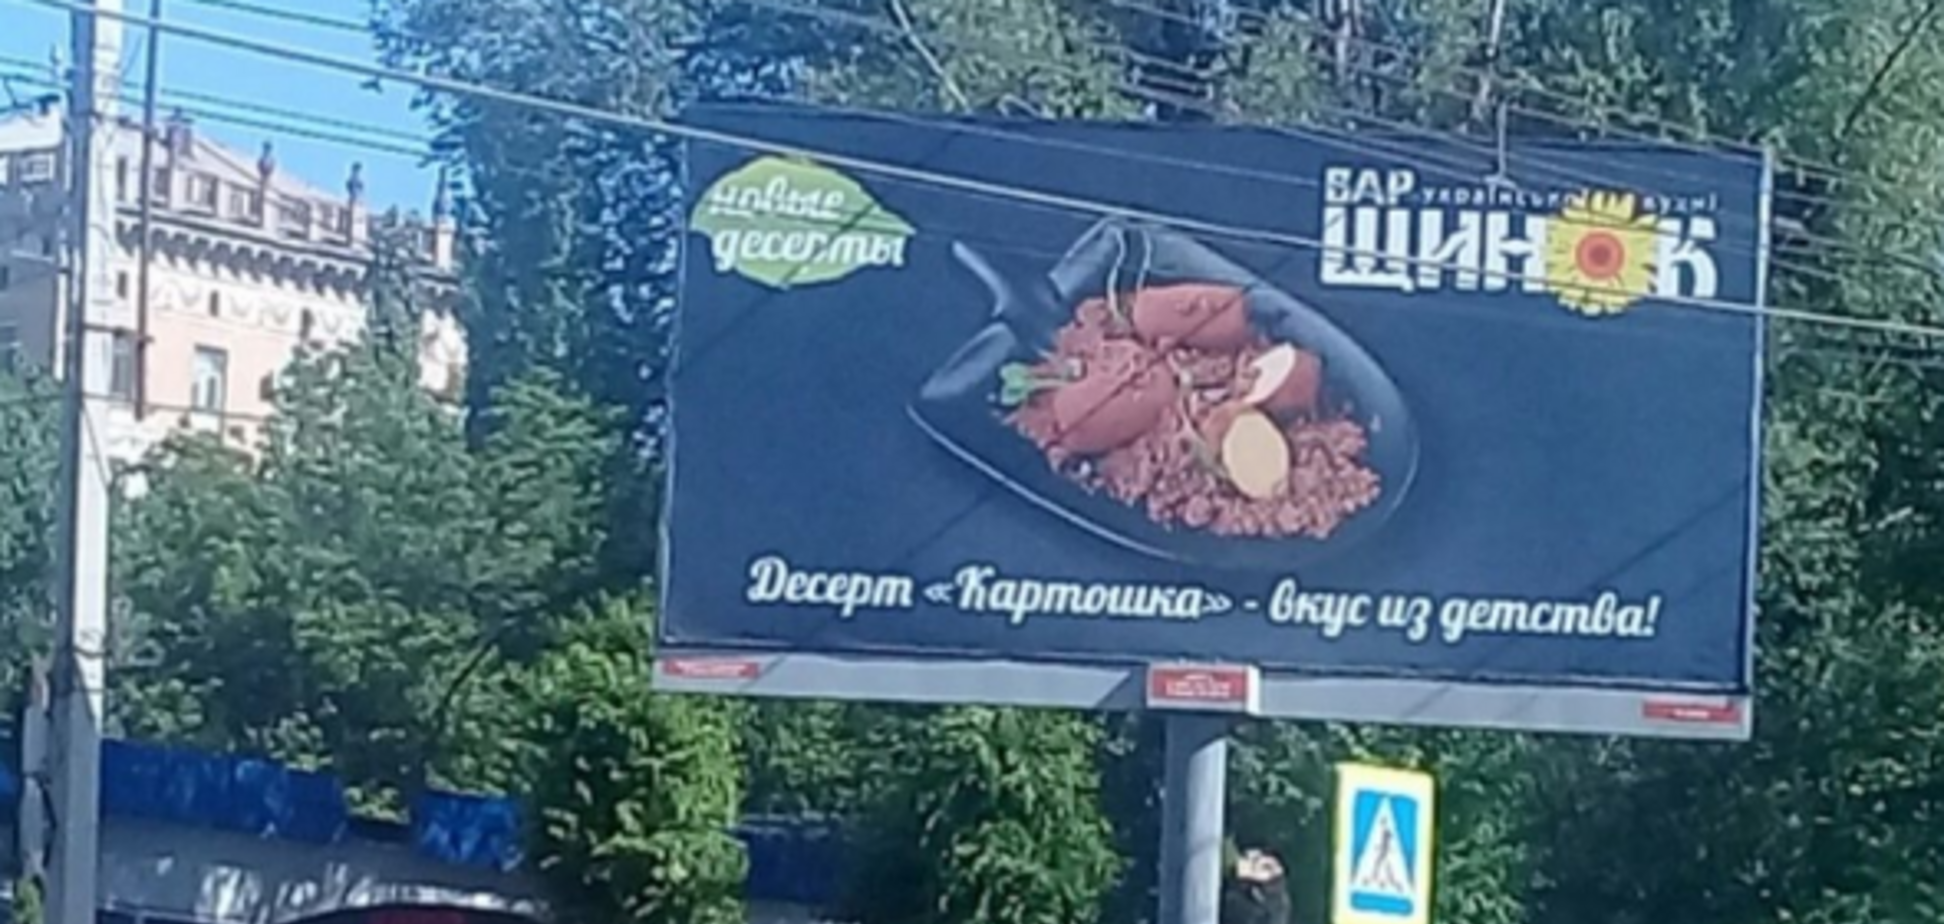 'Прямо з лопати!' У Росії оскандалилися 'українською' рекламою. Фотофакт